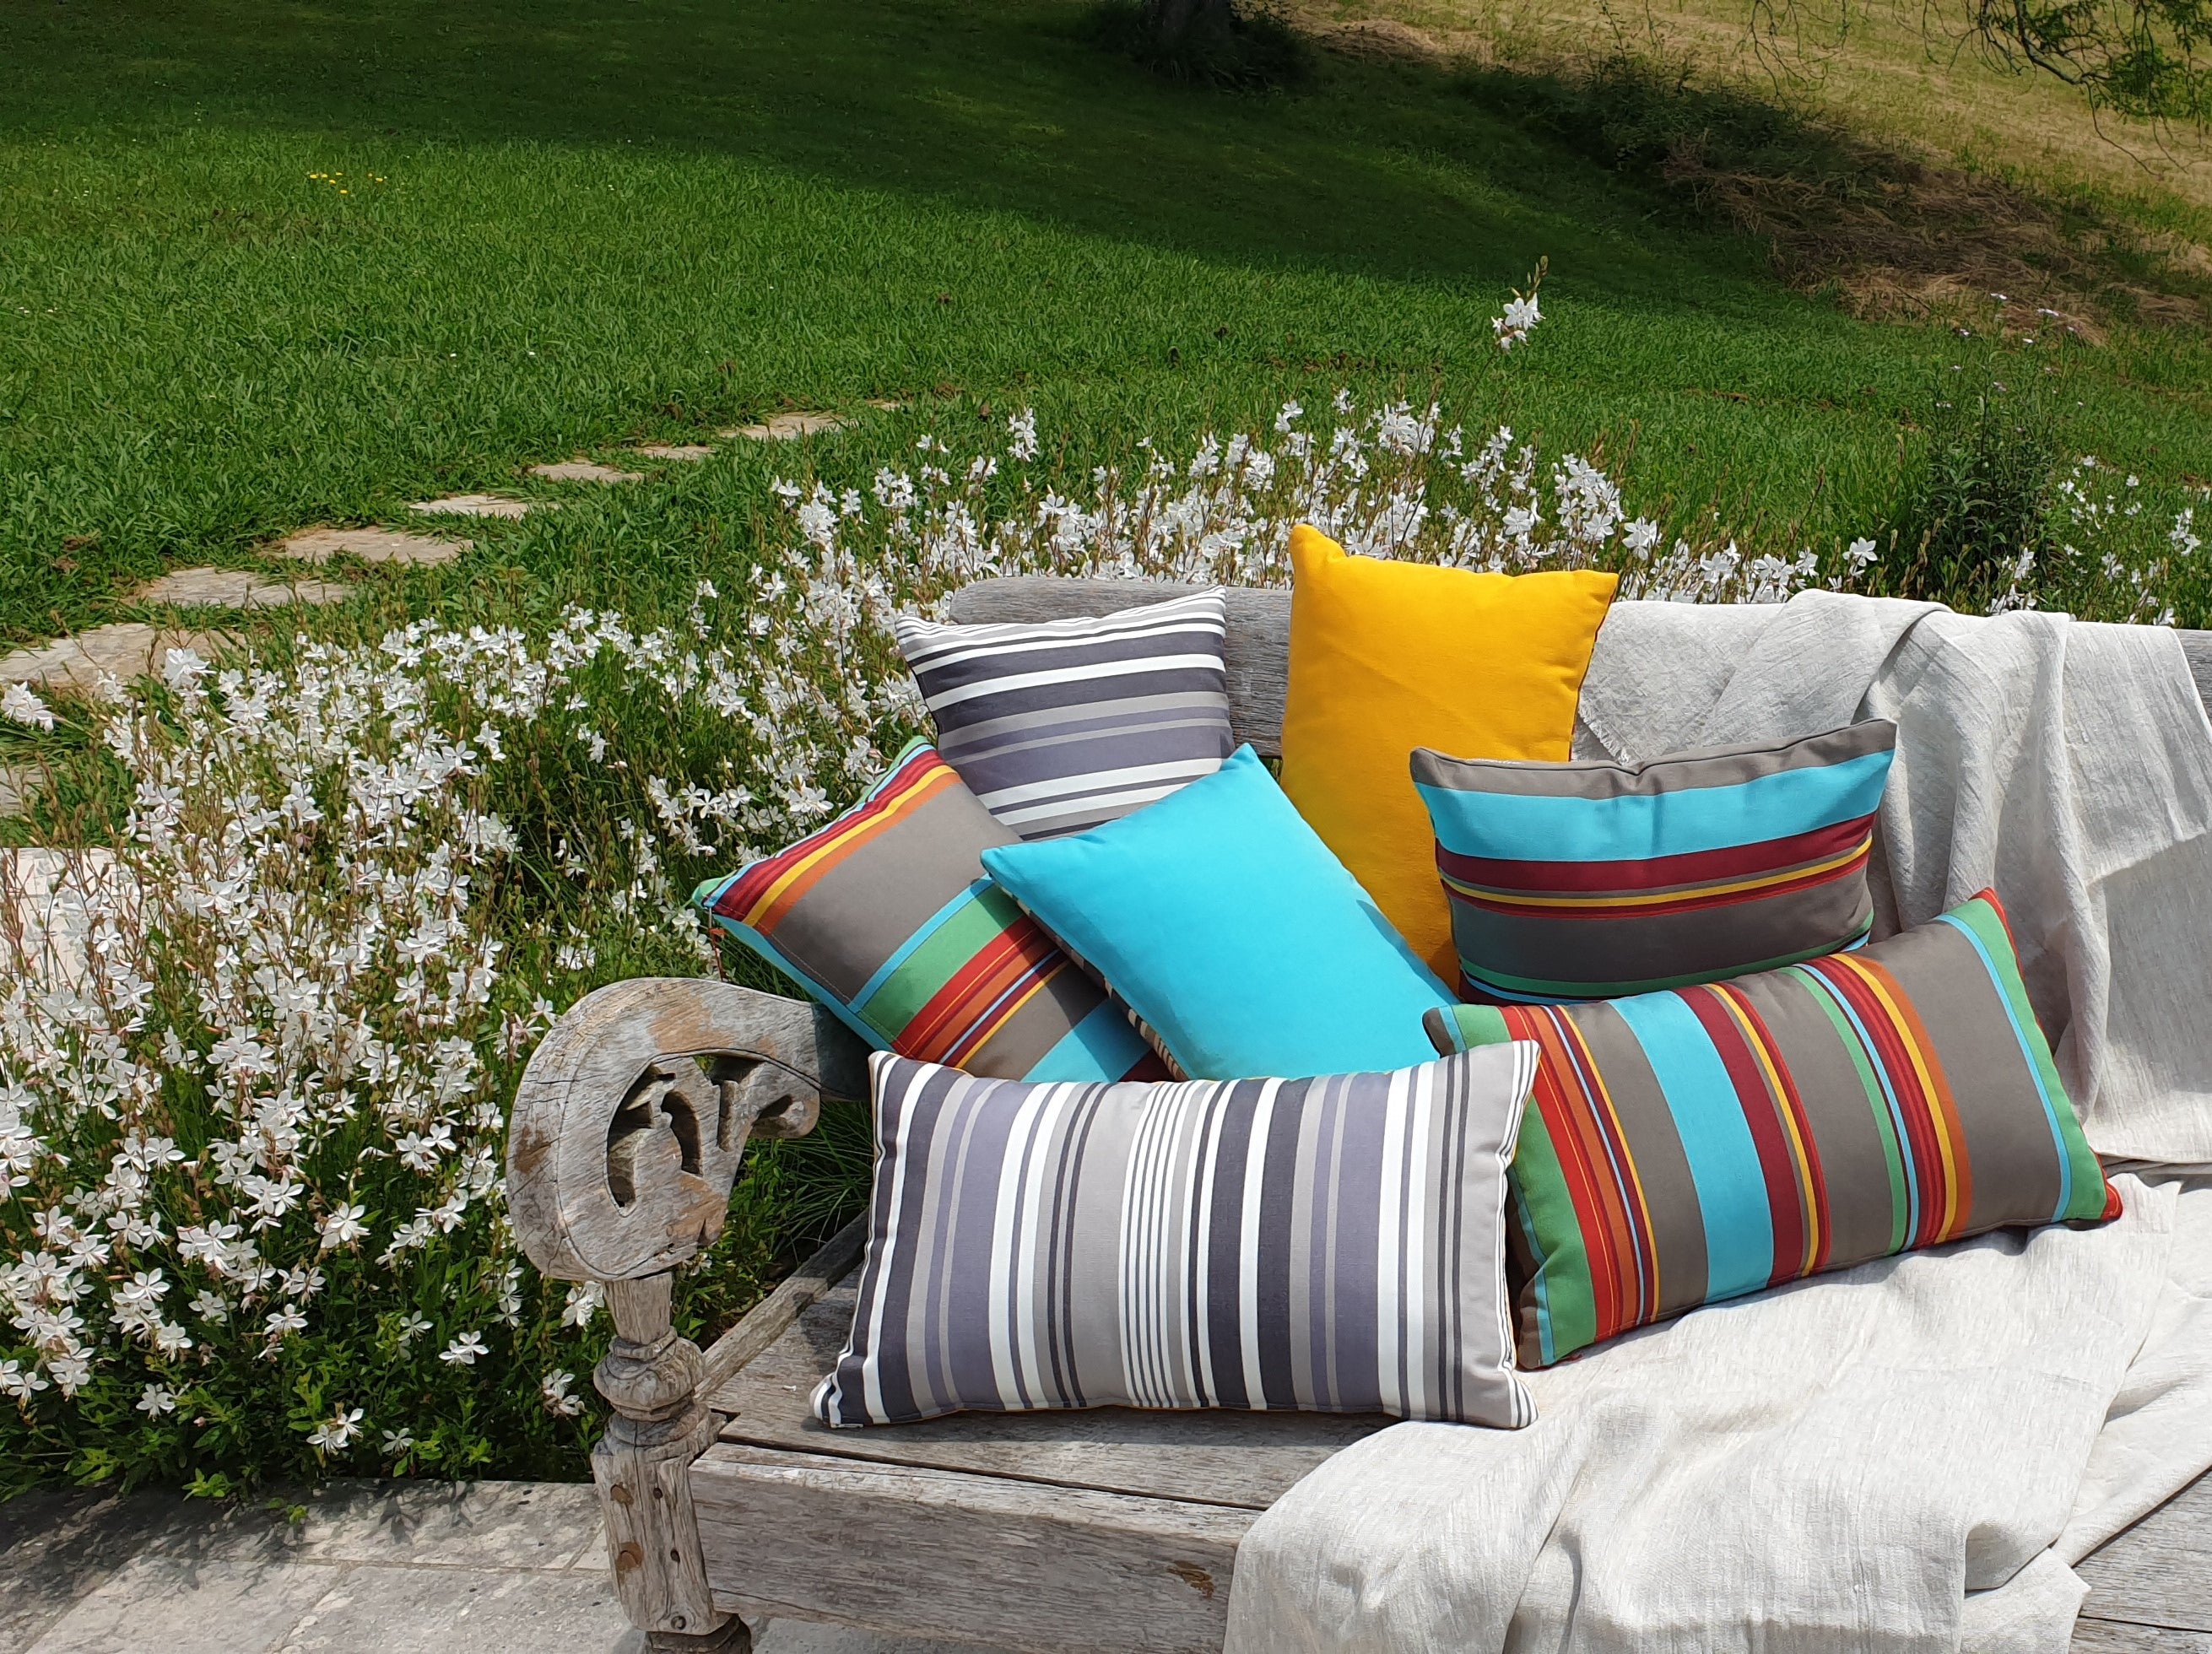 Coussins d'extérieur fabriqués en France par l'atelier Larouquine à Bayonne, posés sur le banc d'une terrasse.